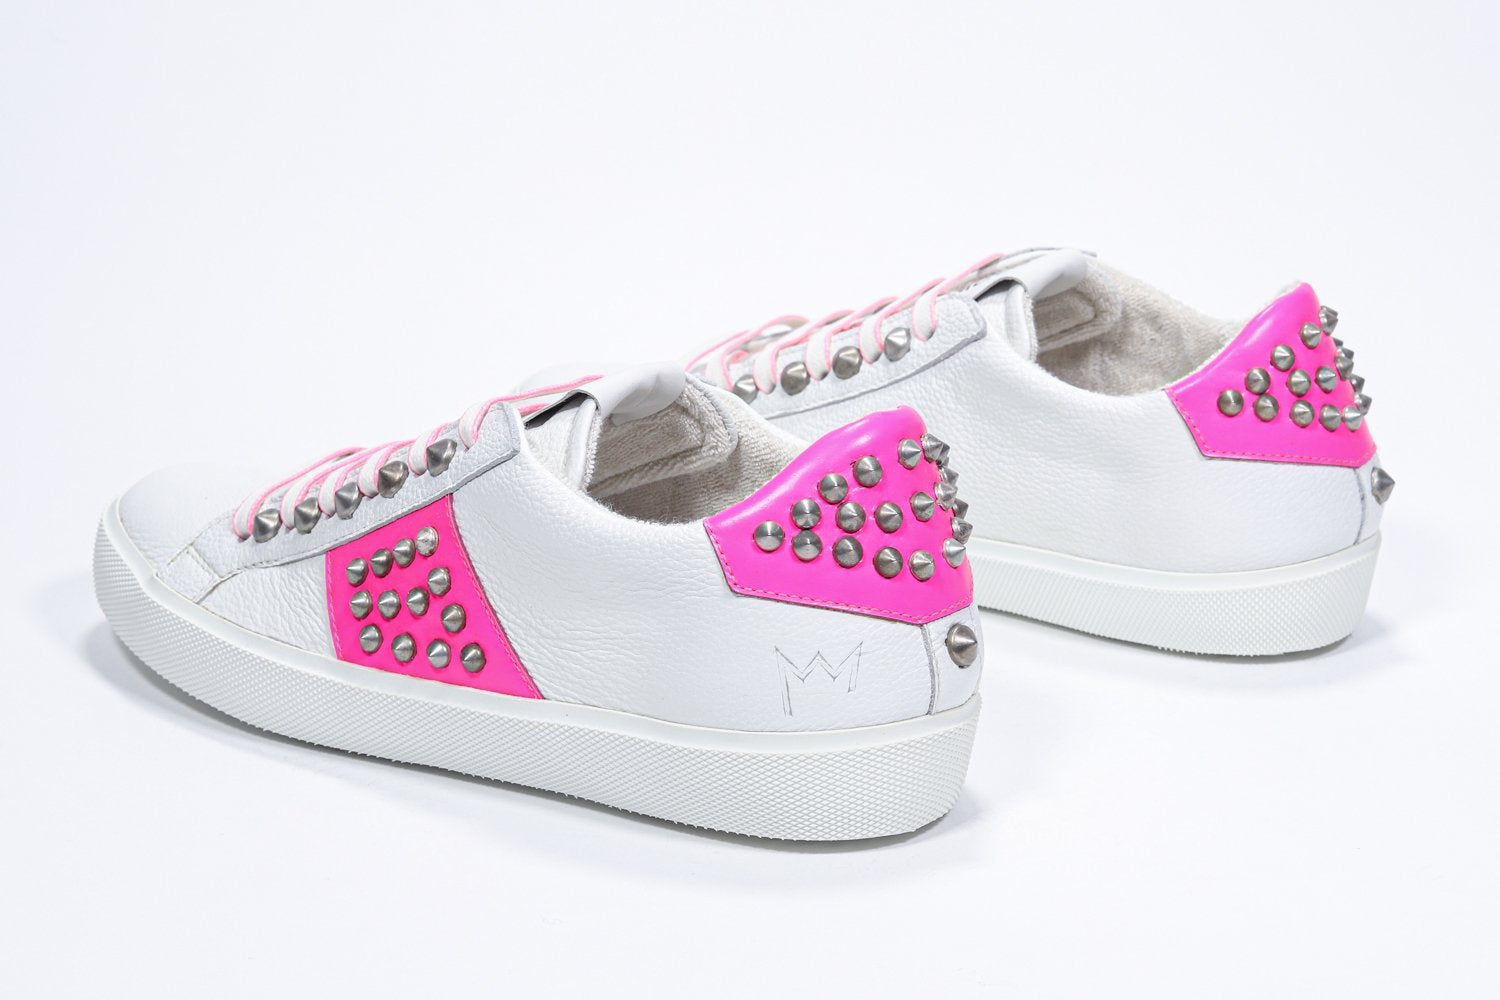 Vista posteriore a tre quarti di BASSE bianco e rosa neon sneaker. Tomaia in pelle con borchie e suola in gomma bianca.